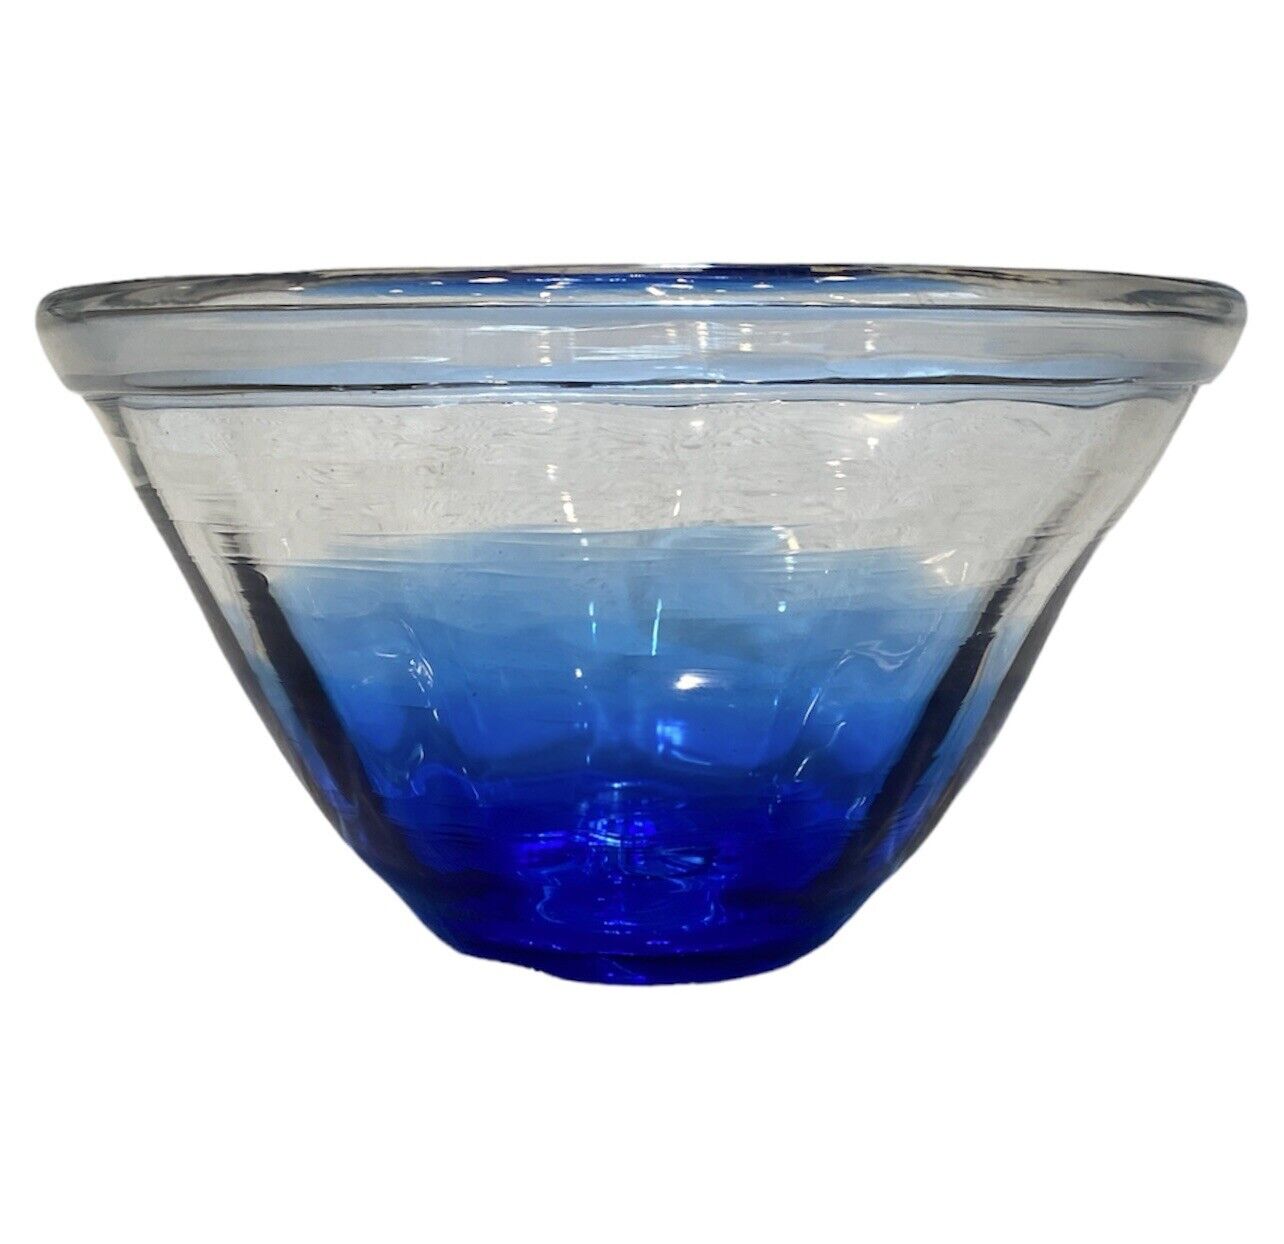 2016 BLENKO Handmade Glass Centerpiece Fruit Bowl, Blue & Clear Glass SIGNED